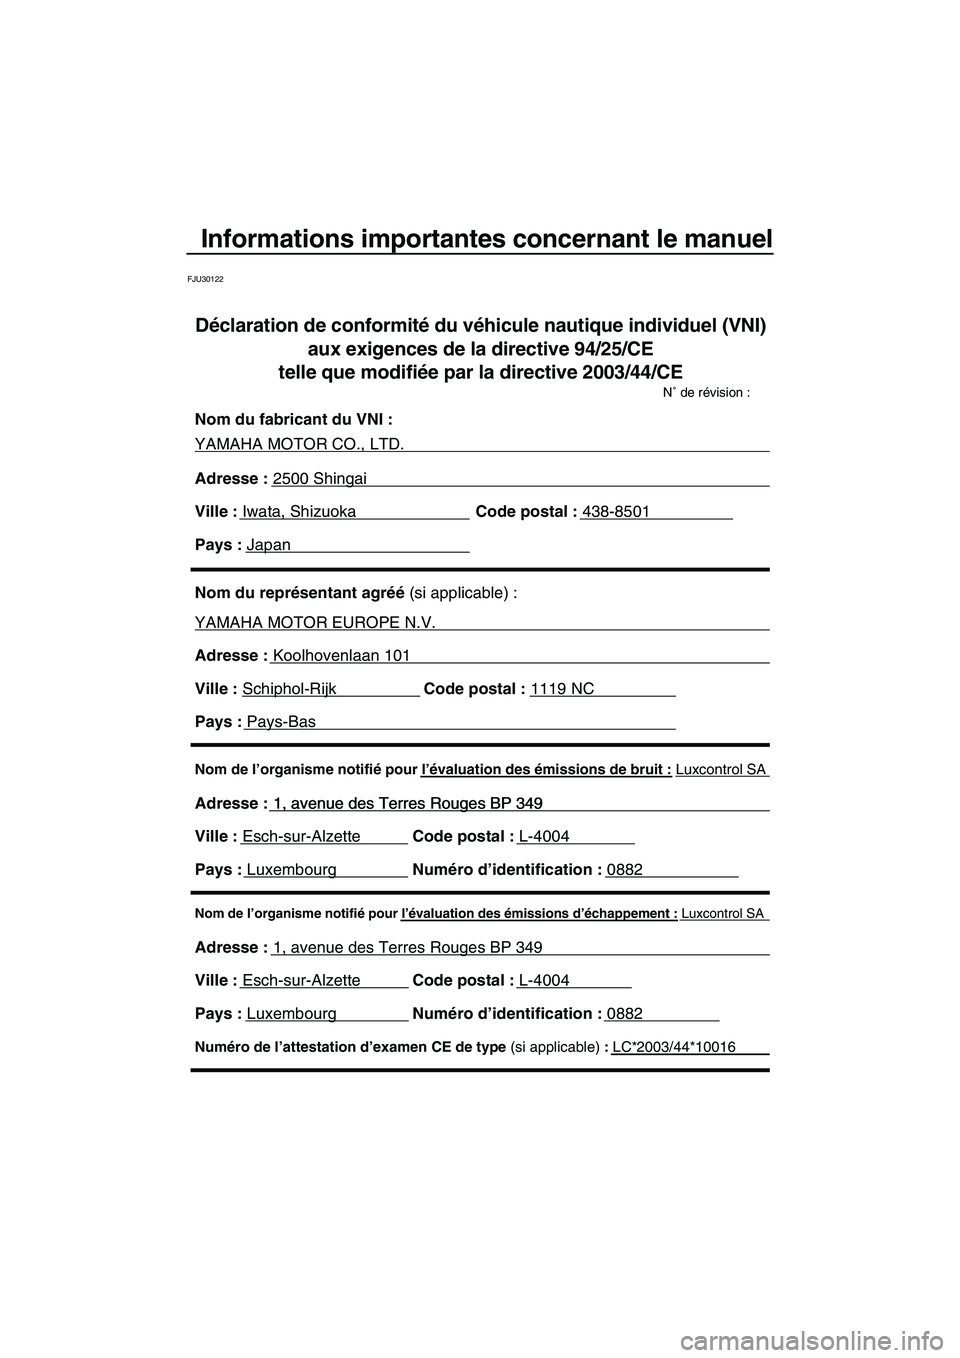 YAMAHA VX 2008  Notices Demploi (in French) Informations importantes concernant le manuel
FJU30122
Nom de l’organisme notifié pour l’évaluation des émissions d’échappement : Luxcontrol SA
Adresse : 1, avenue des Terres Rouges BP 349 
